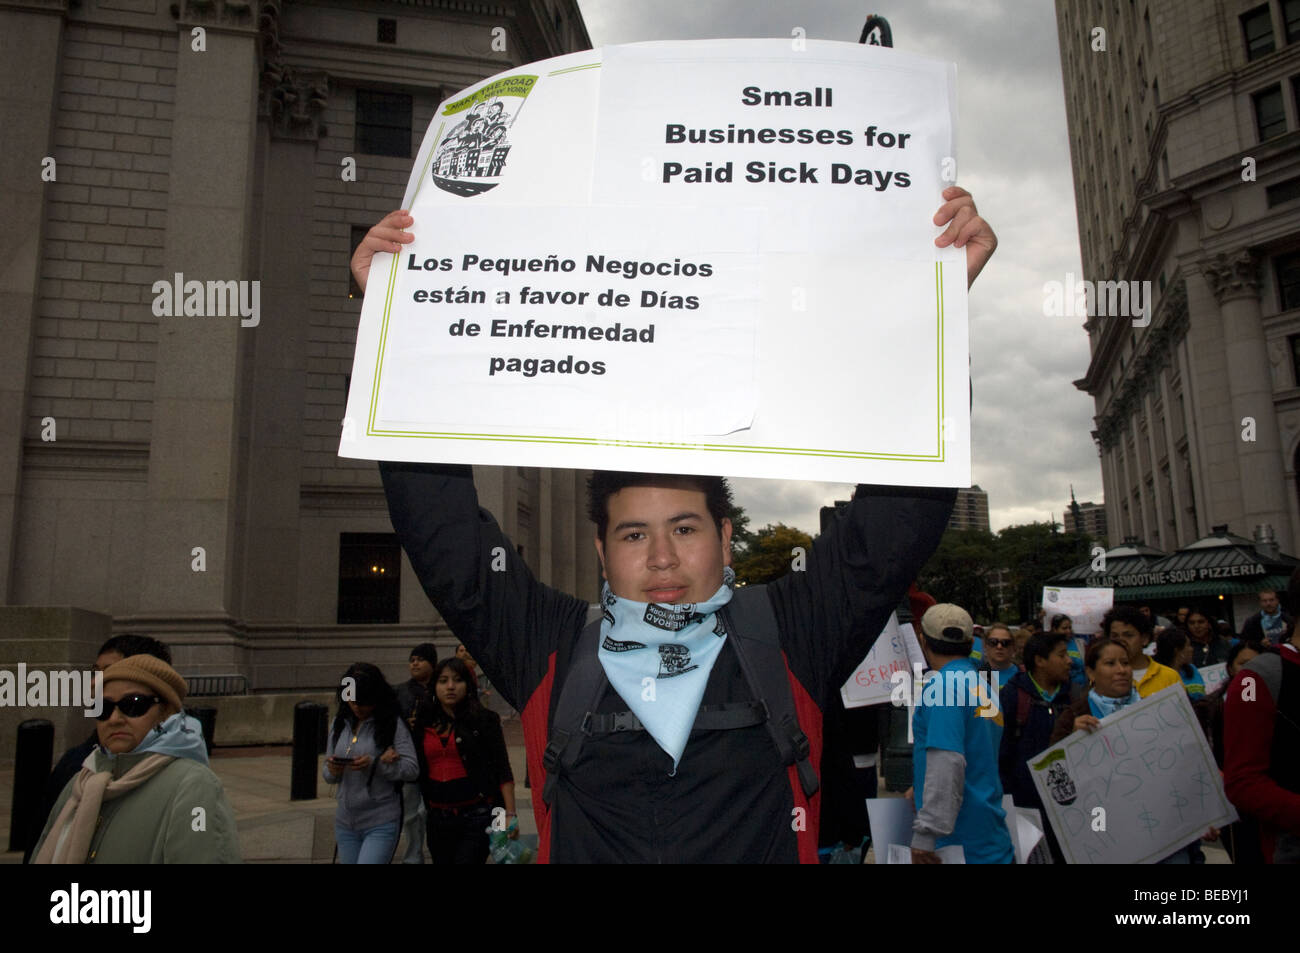 Les travailleurs immigrés, les étudiants et leurs partisans rassemblement à New York demande au Conseil municipal d'adopter le projet de loi de congés de maladie payés Banque D'Images